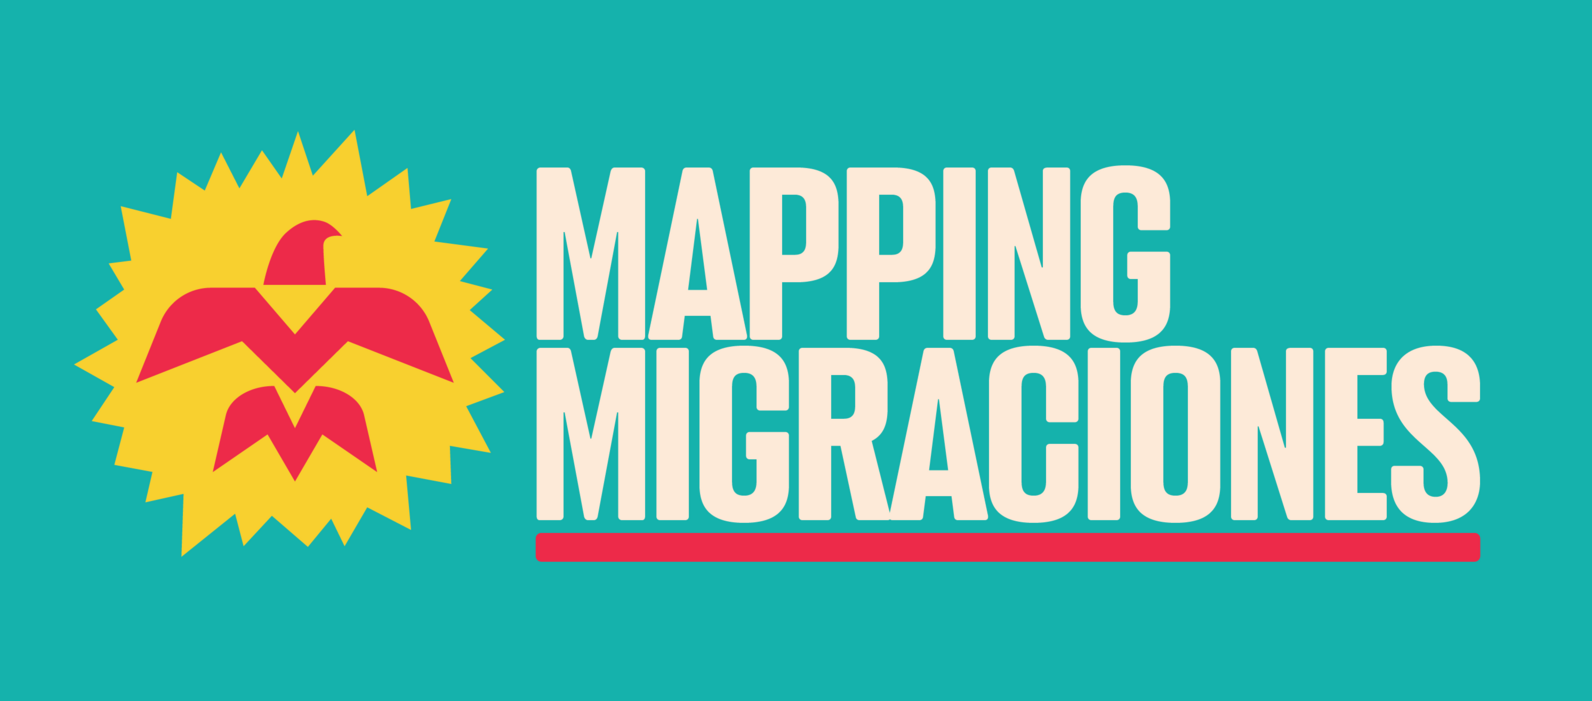 Mapping Migraciones logo